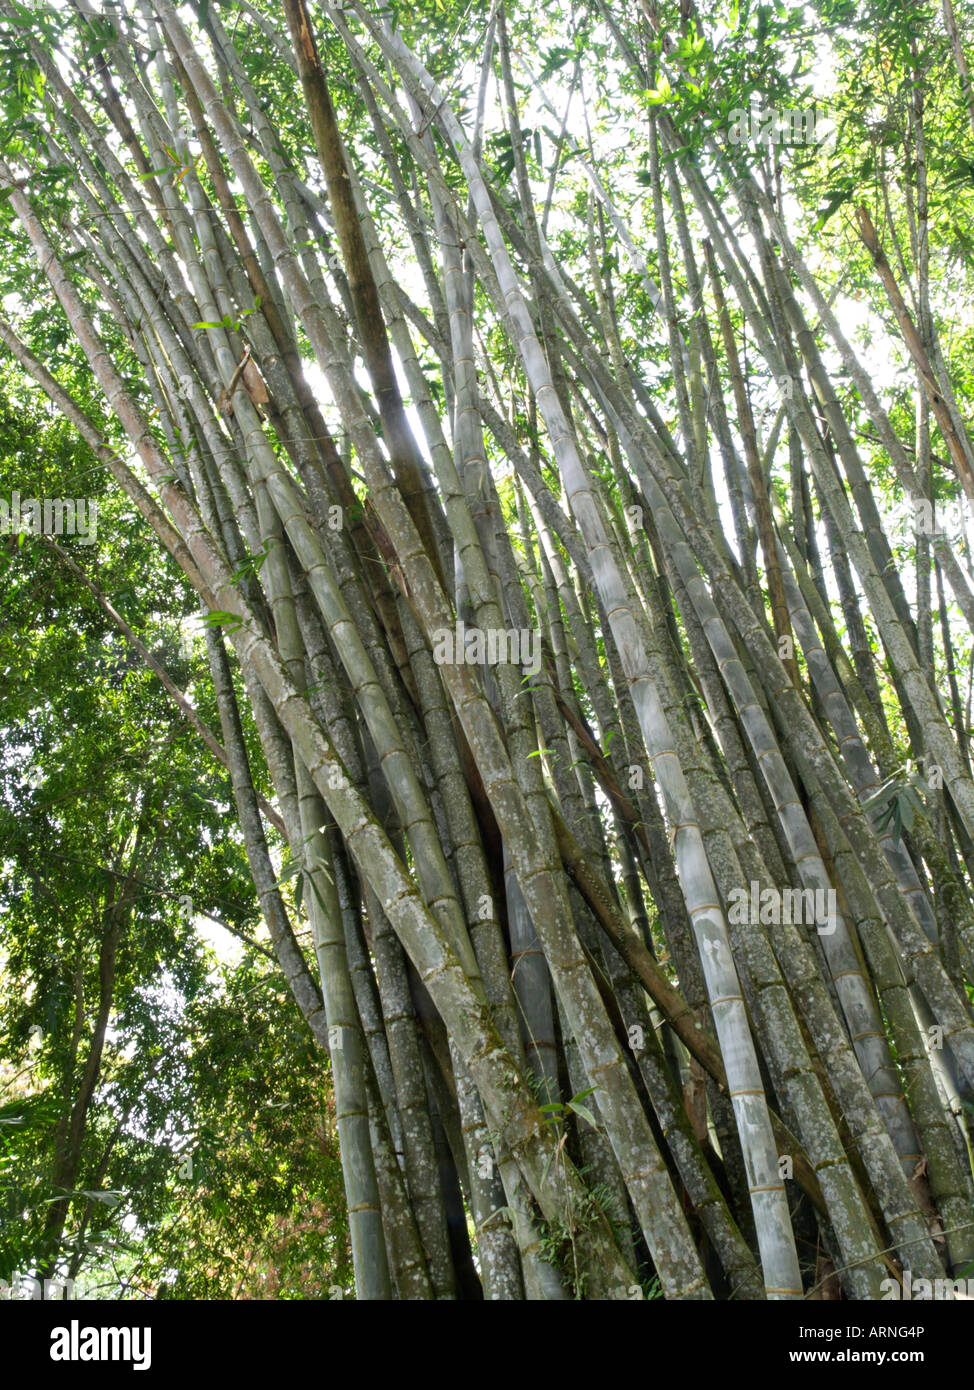 Giant bamboo (Dendrocalamus giganteus) Stock Photo